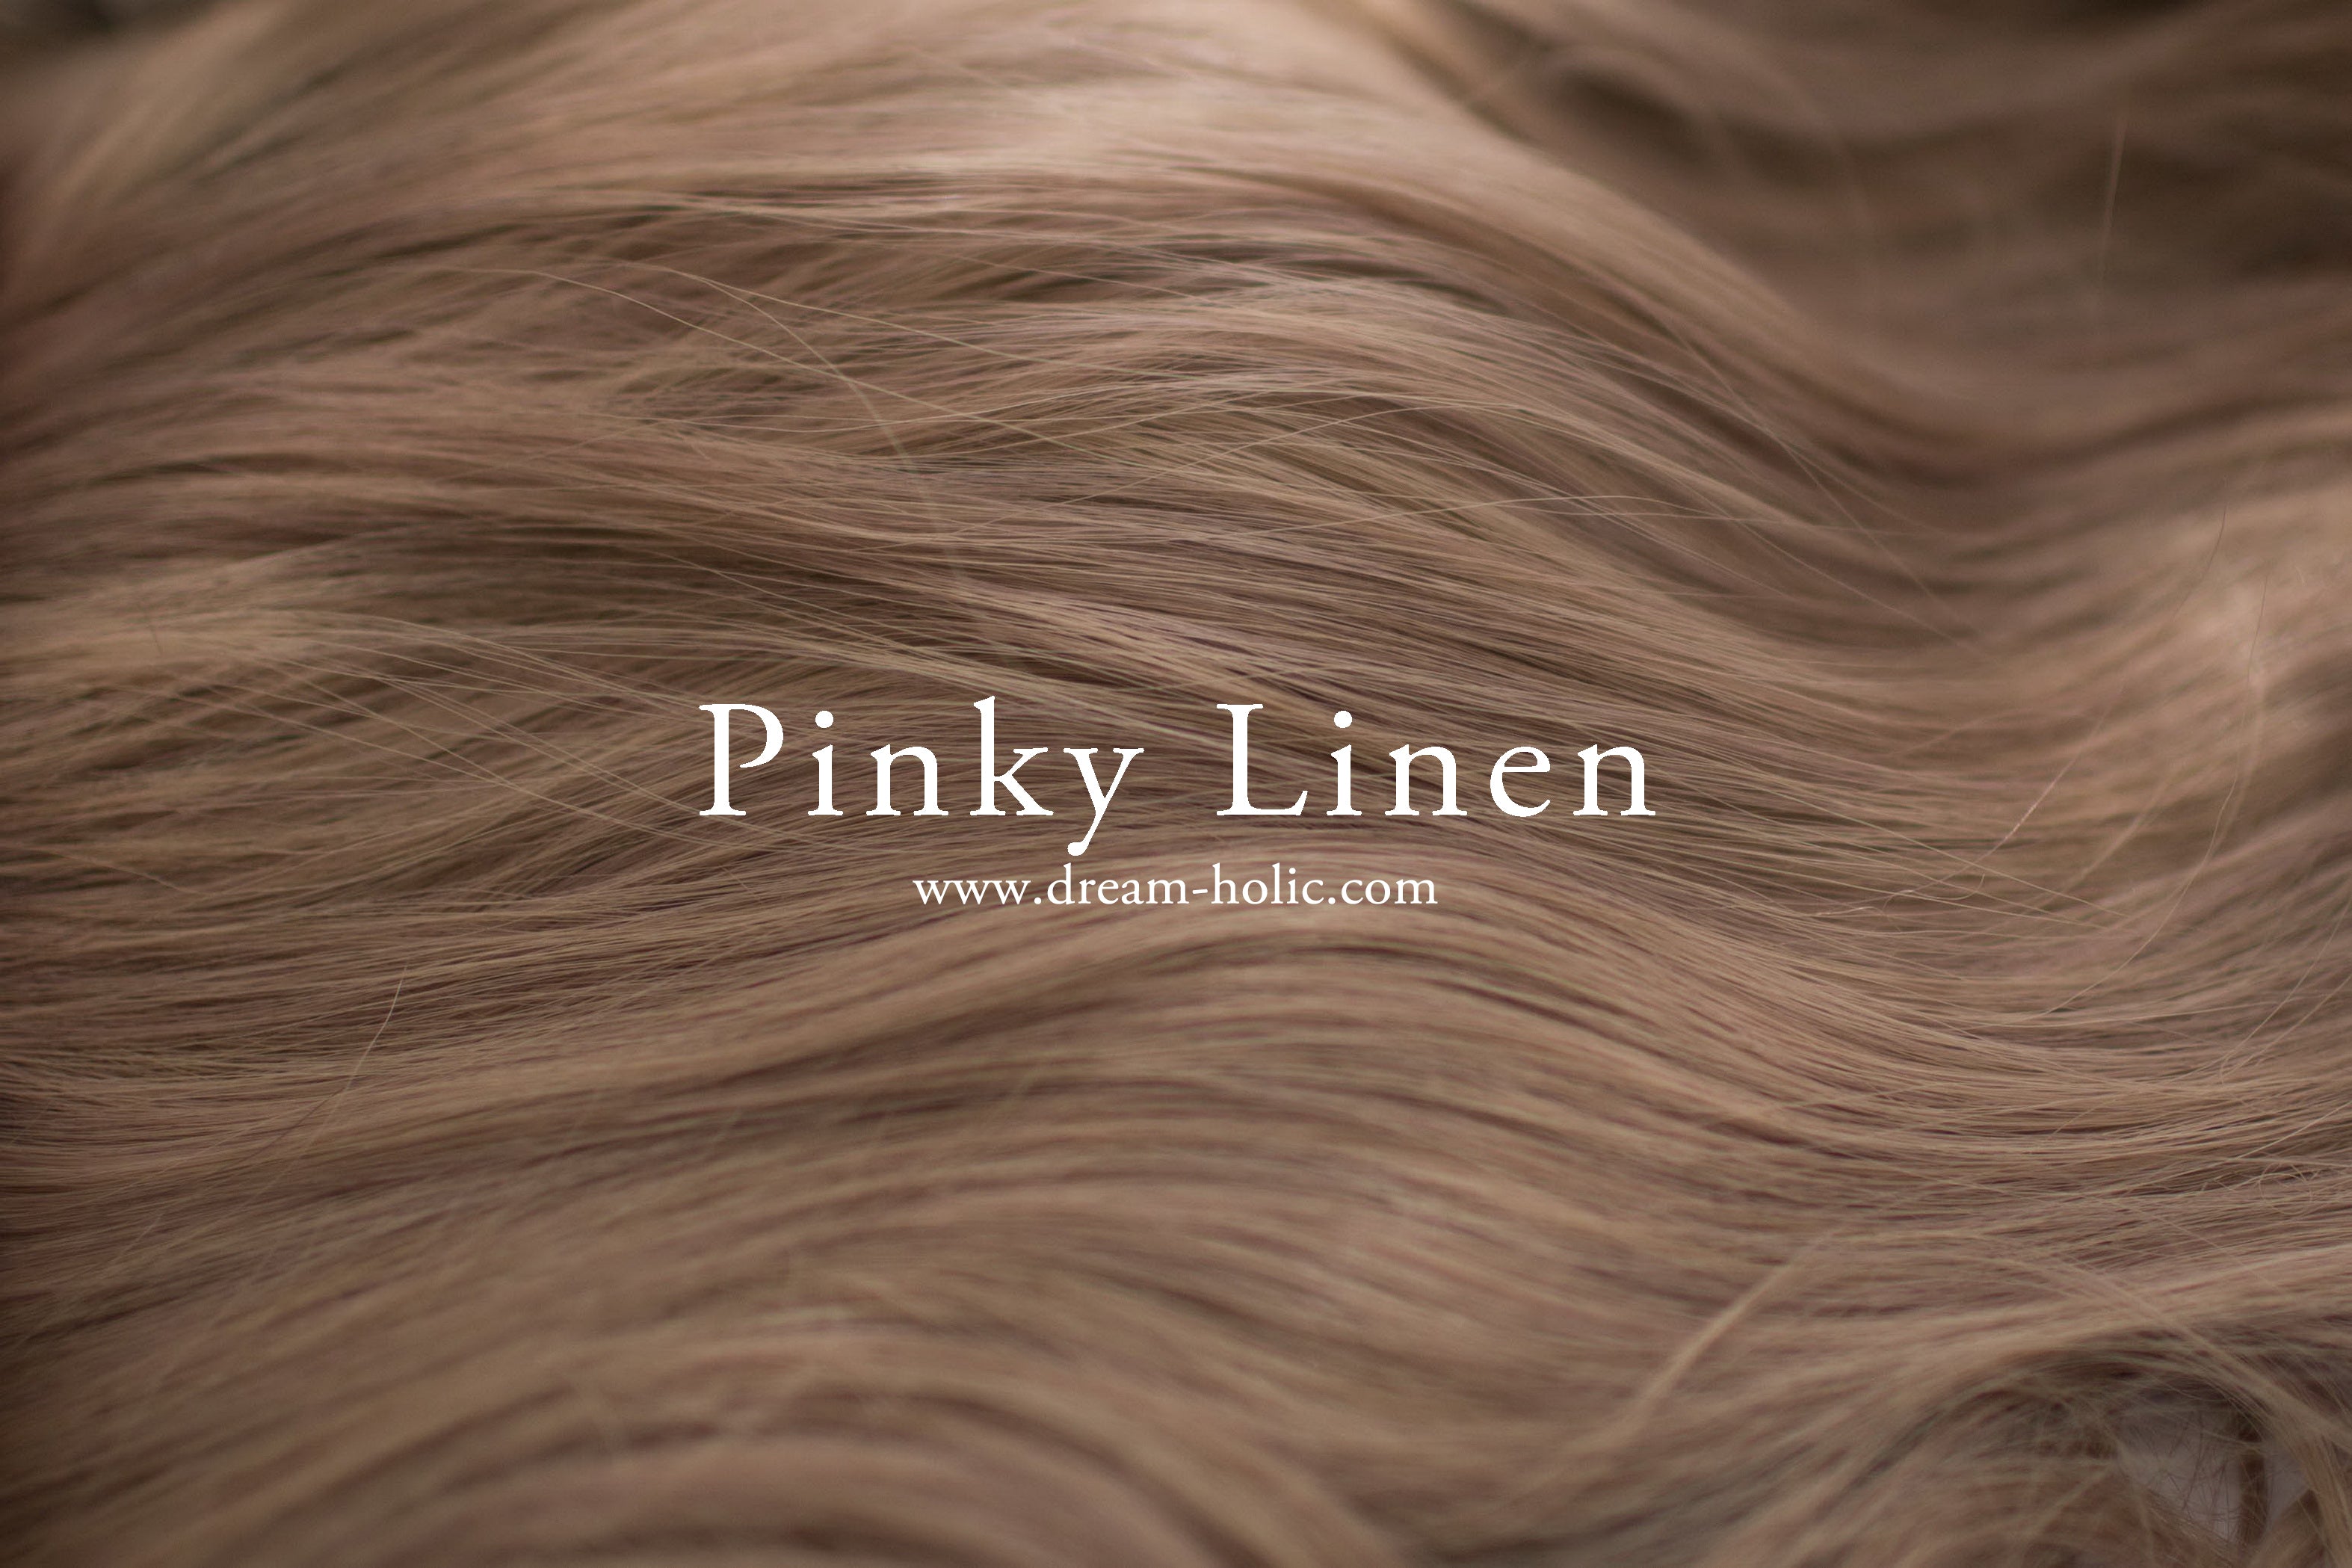 Pinky Linen